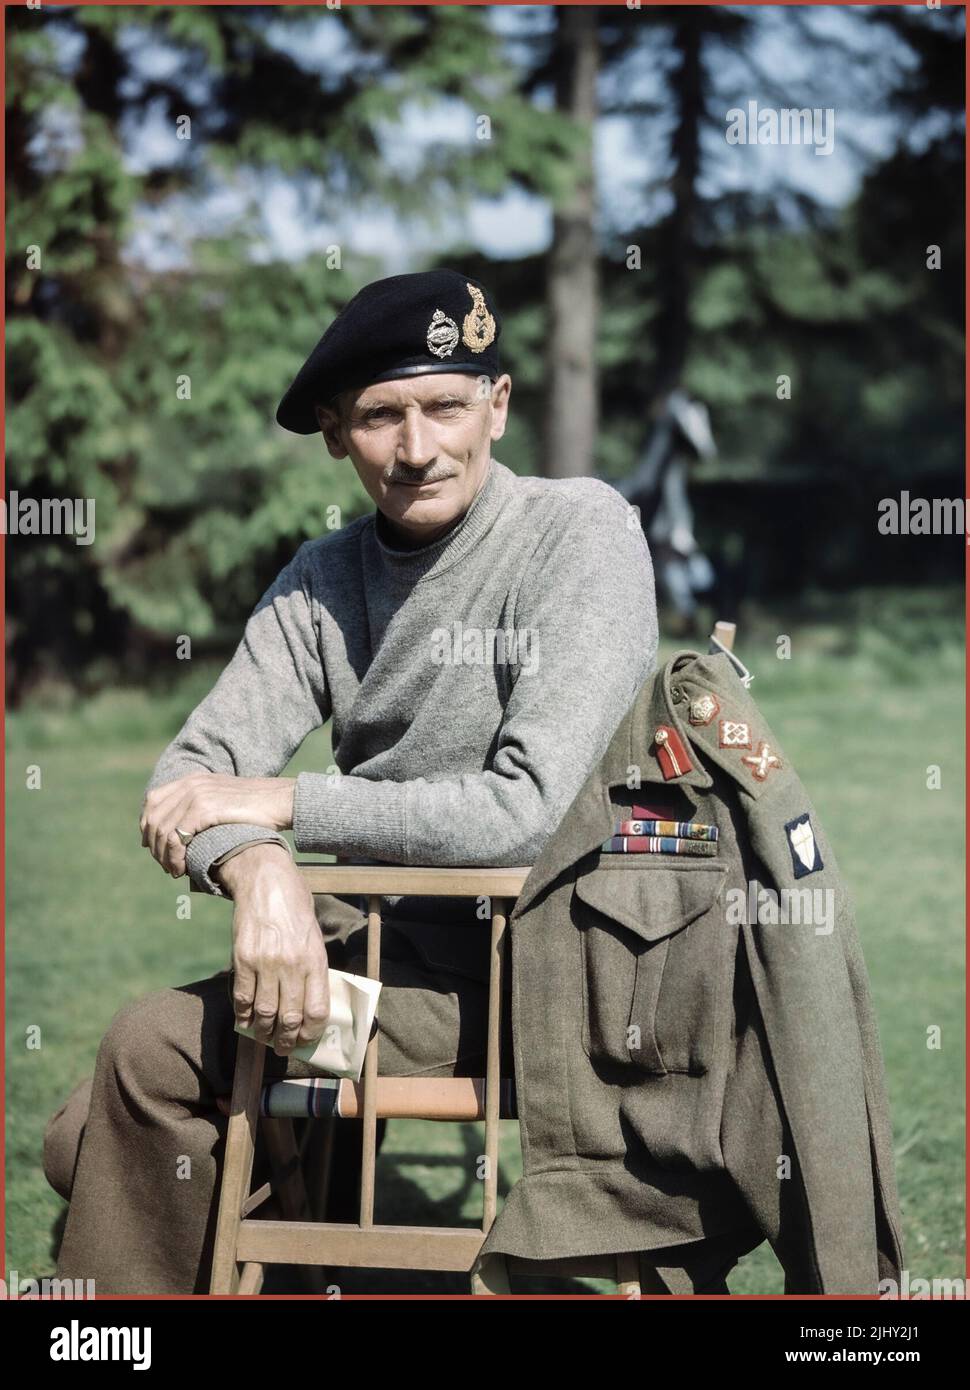 UNIFORME RITRATTO DI MONTGOMERY WW2 Ritratto dell'Ottava Comandante dell'Esercito britannico, generale Sir Bernard Montgomery, che indossa il suo 'maglione di battaglia' e il berretto serbatoio, nel Regno Unito, 1943. Seconda guerra mondiale seconda guerra mondiale Foto Stock